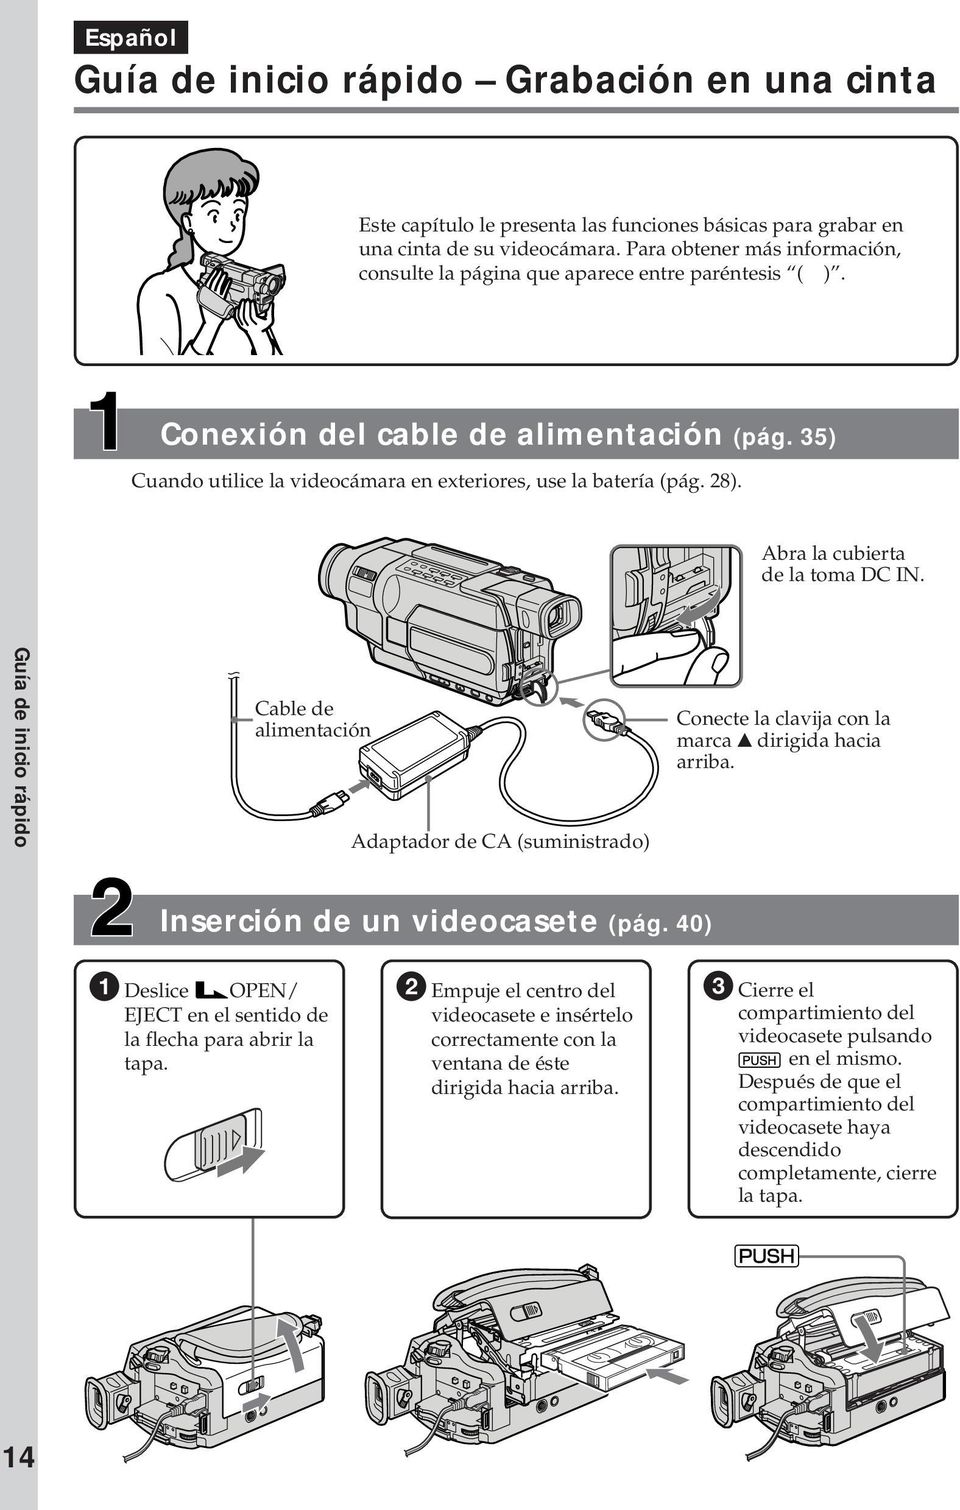 Abra la cubierta de la toma DC IN. Guía de inicio rápido Cable de alimentación Adaptador de CA (suministrado) Conecte la clavija con la marca v dirigida hacia arriba. Inserción de un videocasete (pág.